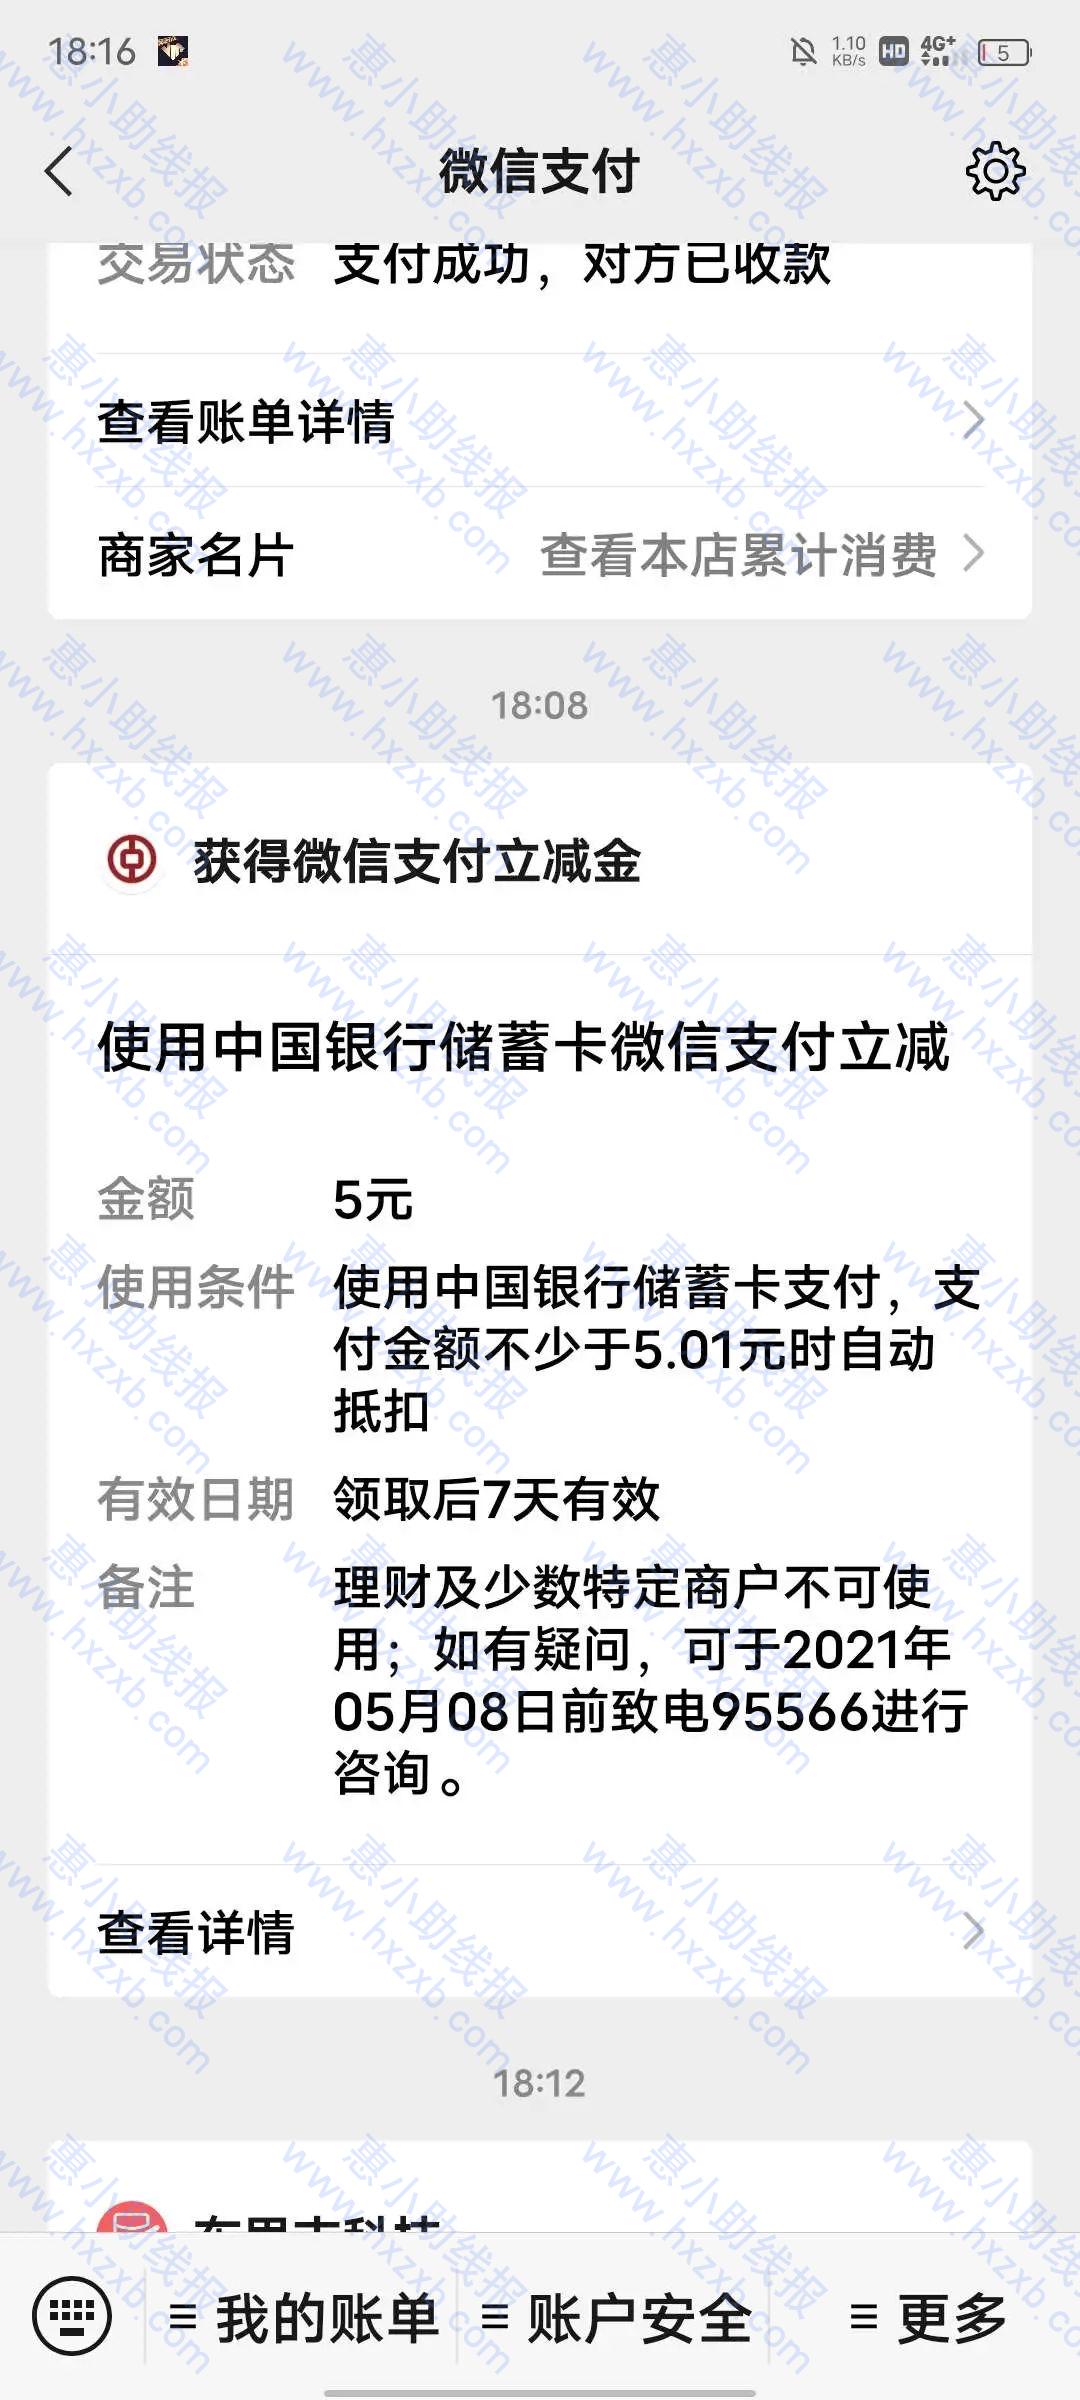 中国银行山东分行#五块微信立减金